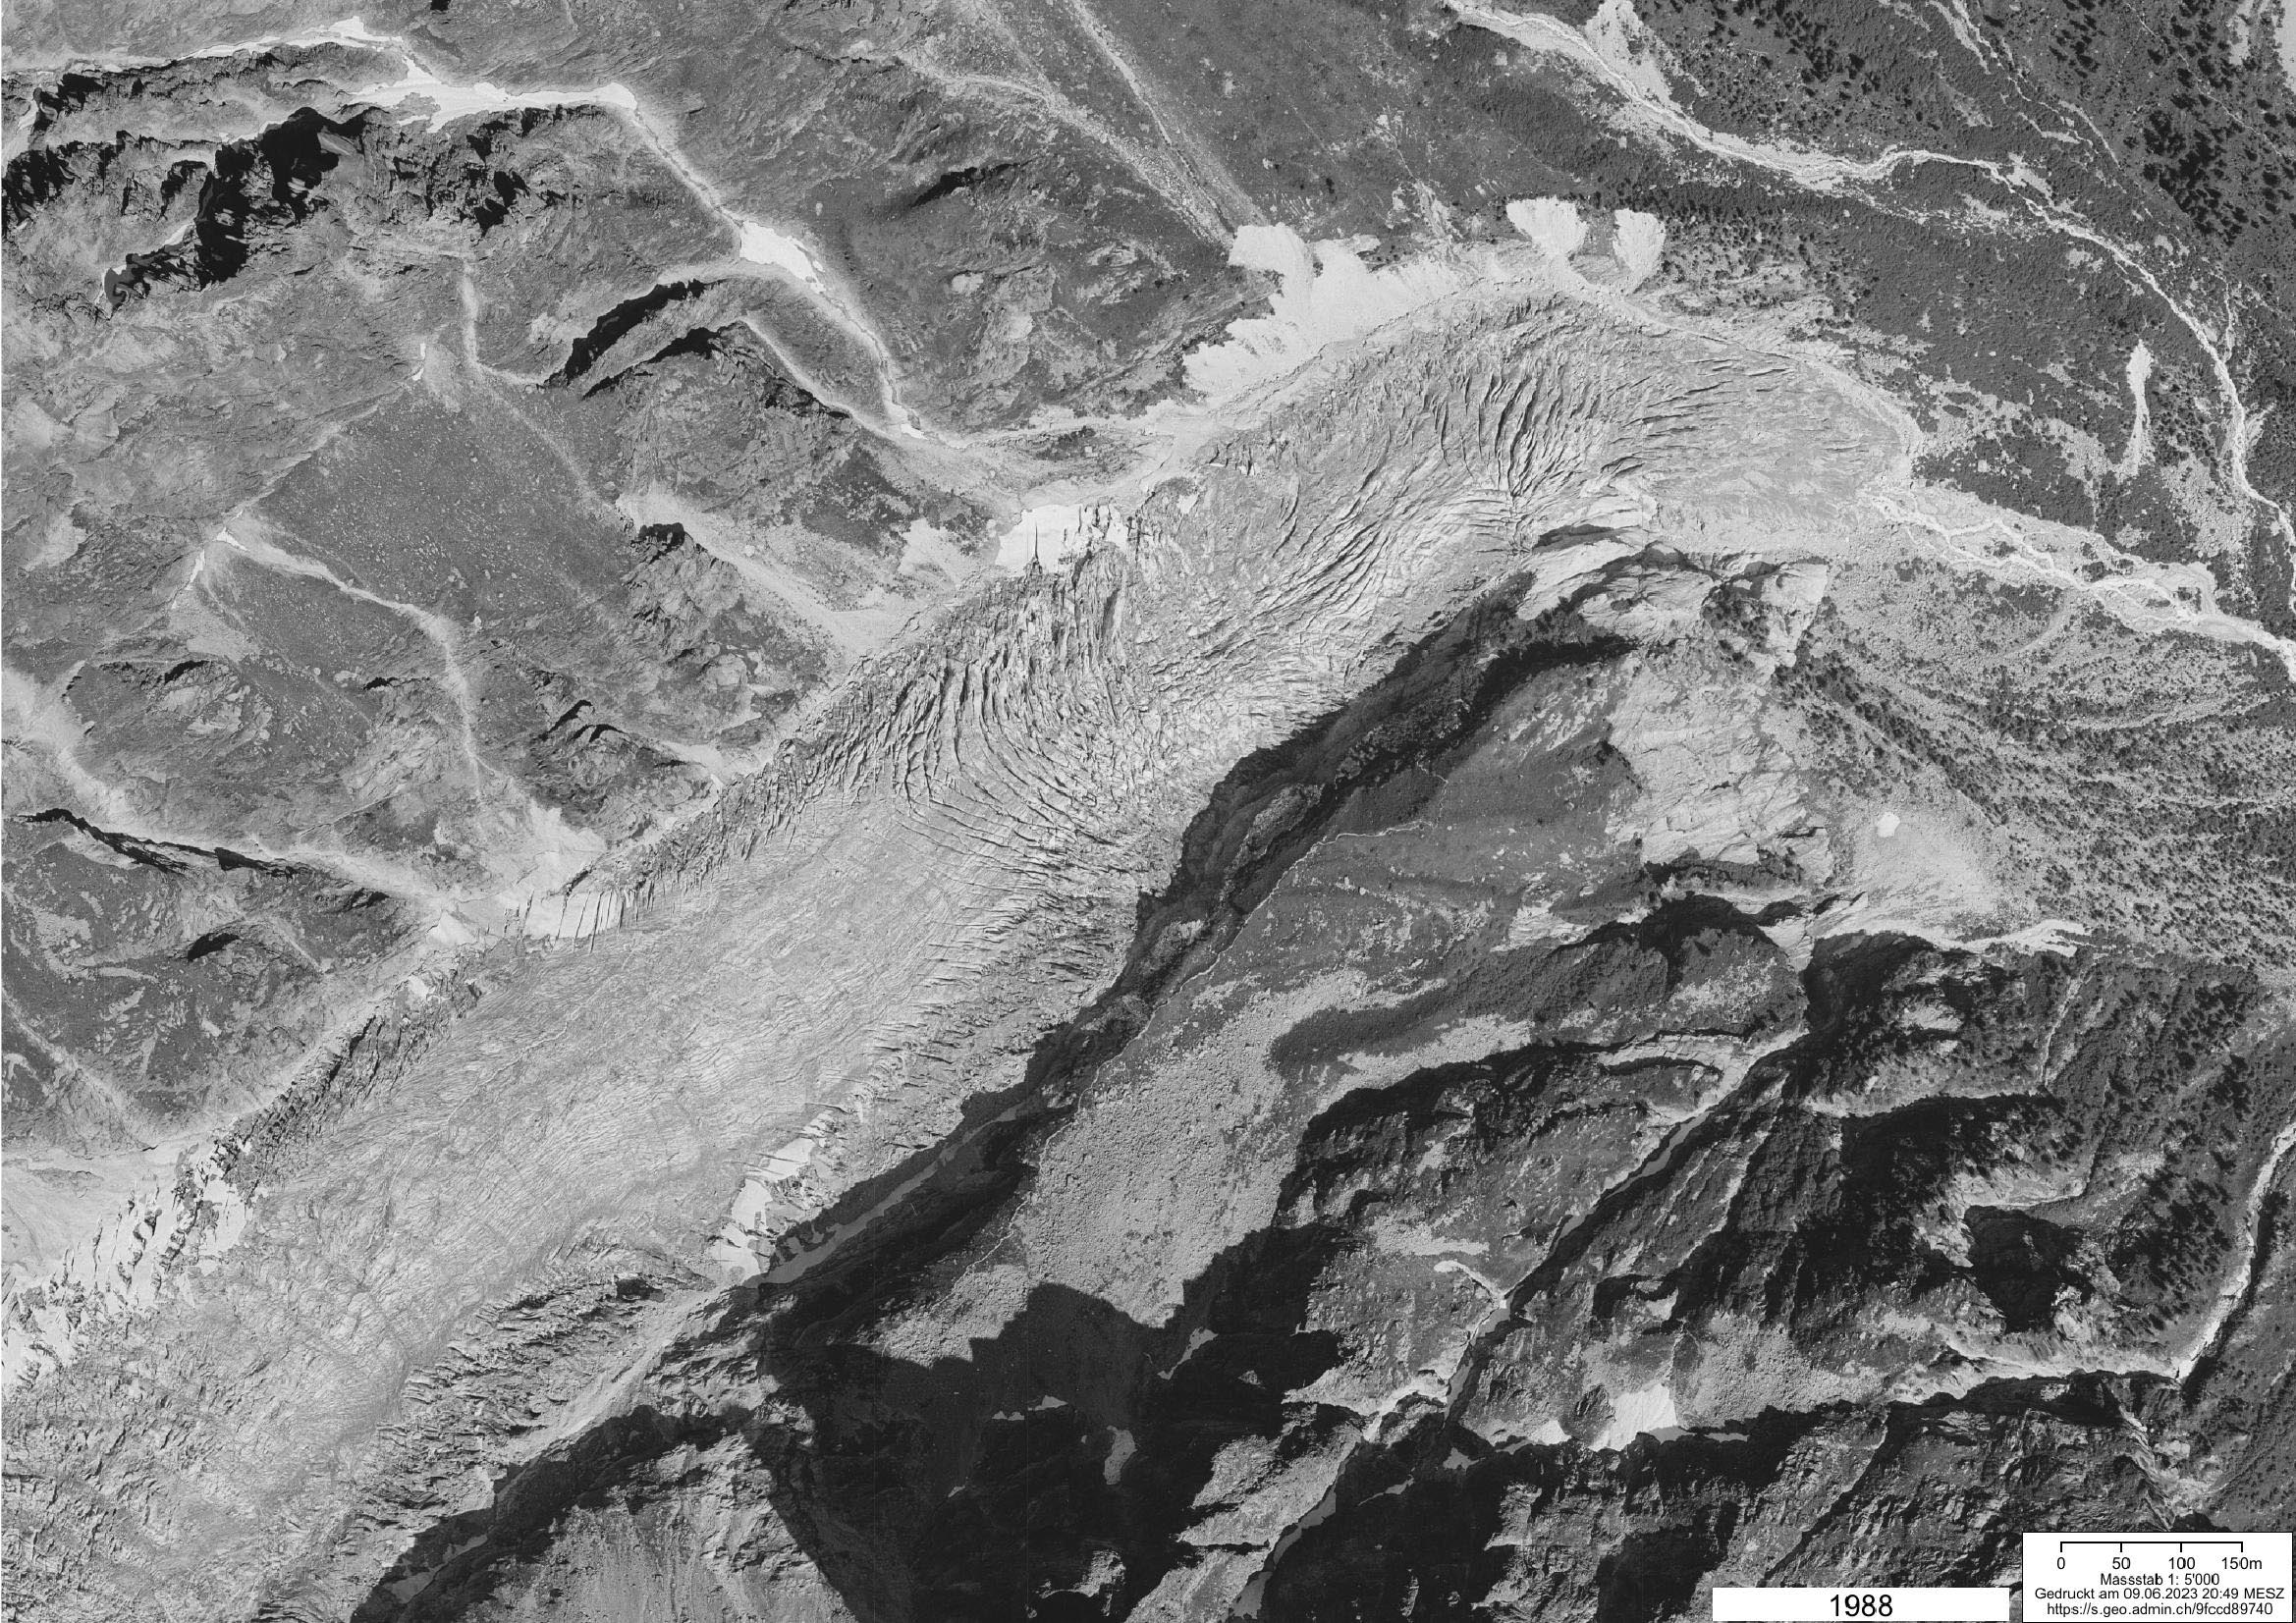 De tong van de Glacier de Saleinaz in 1988 (links) en 2020. Bron: swisstopo Zeitreise.